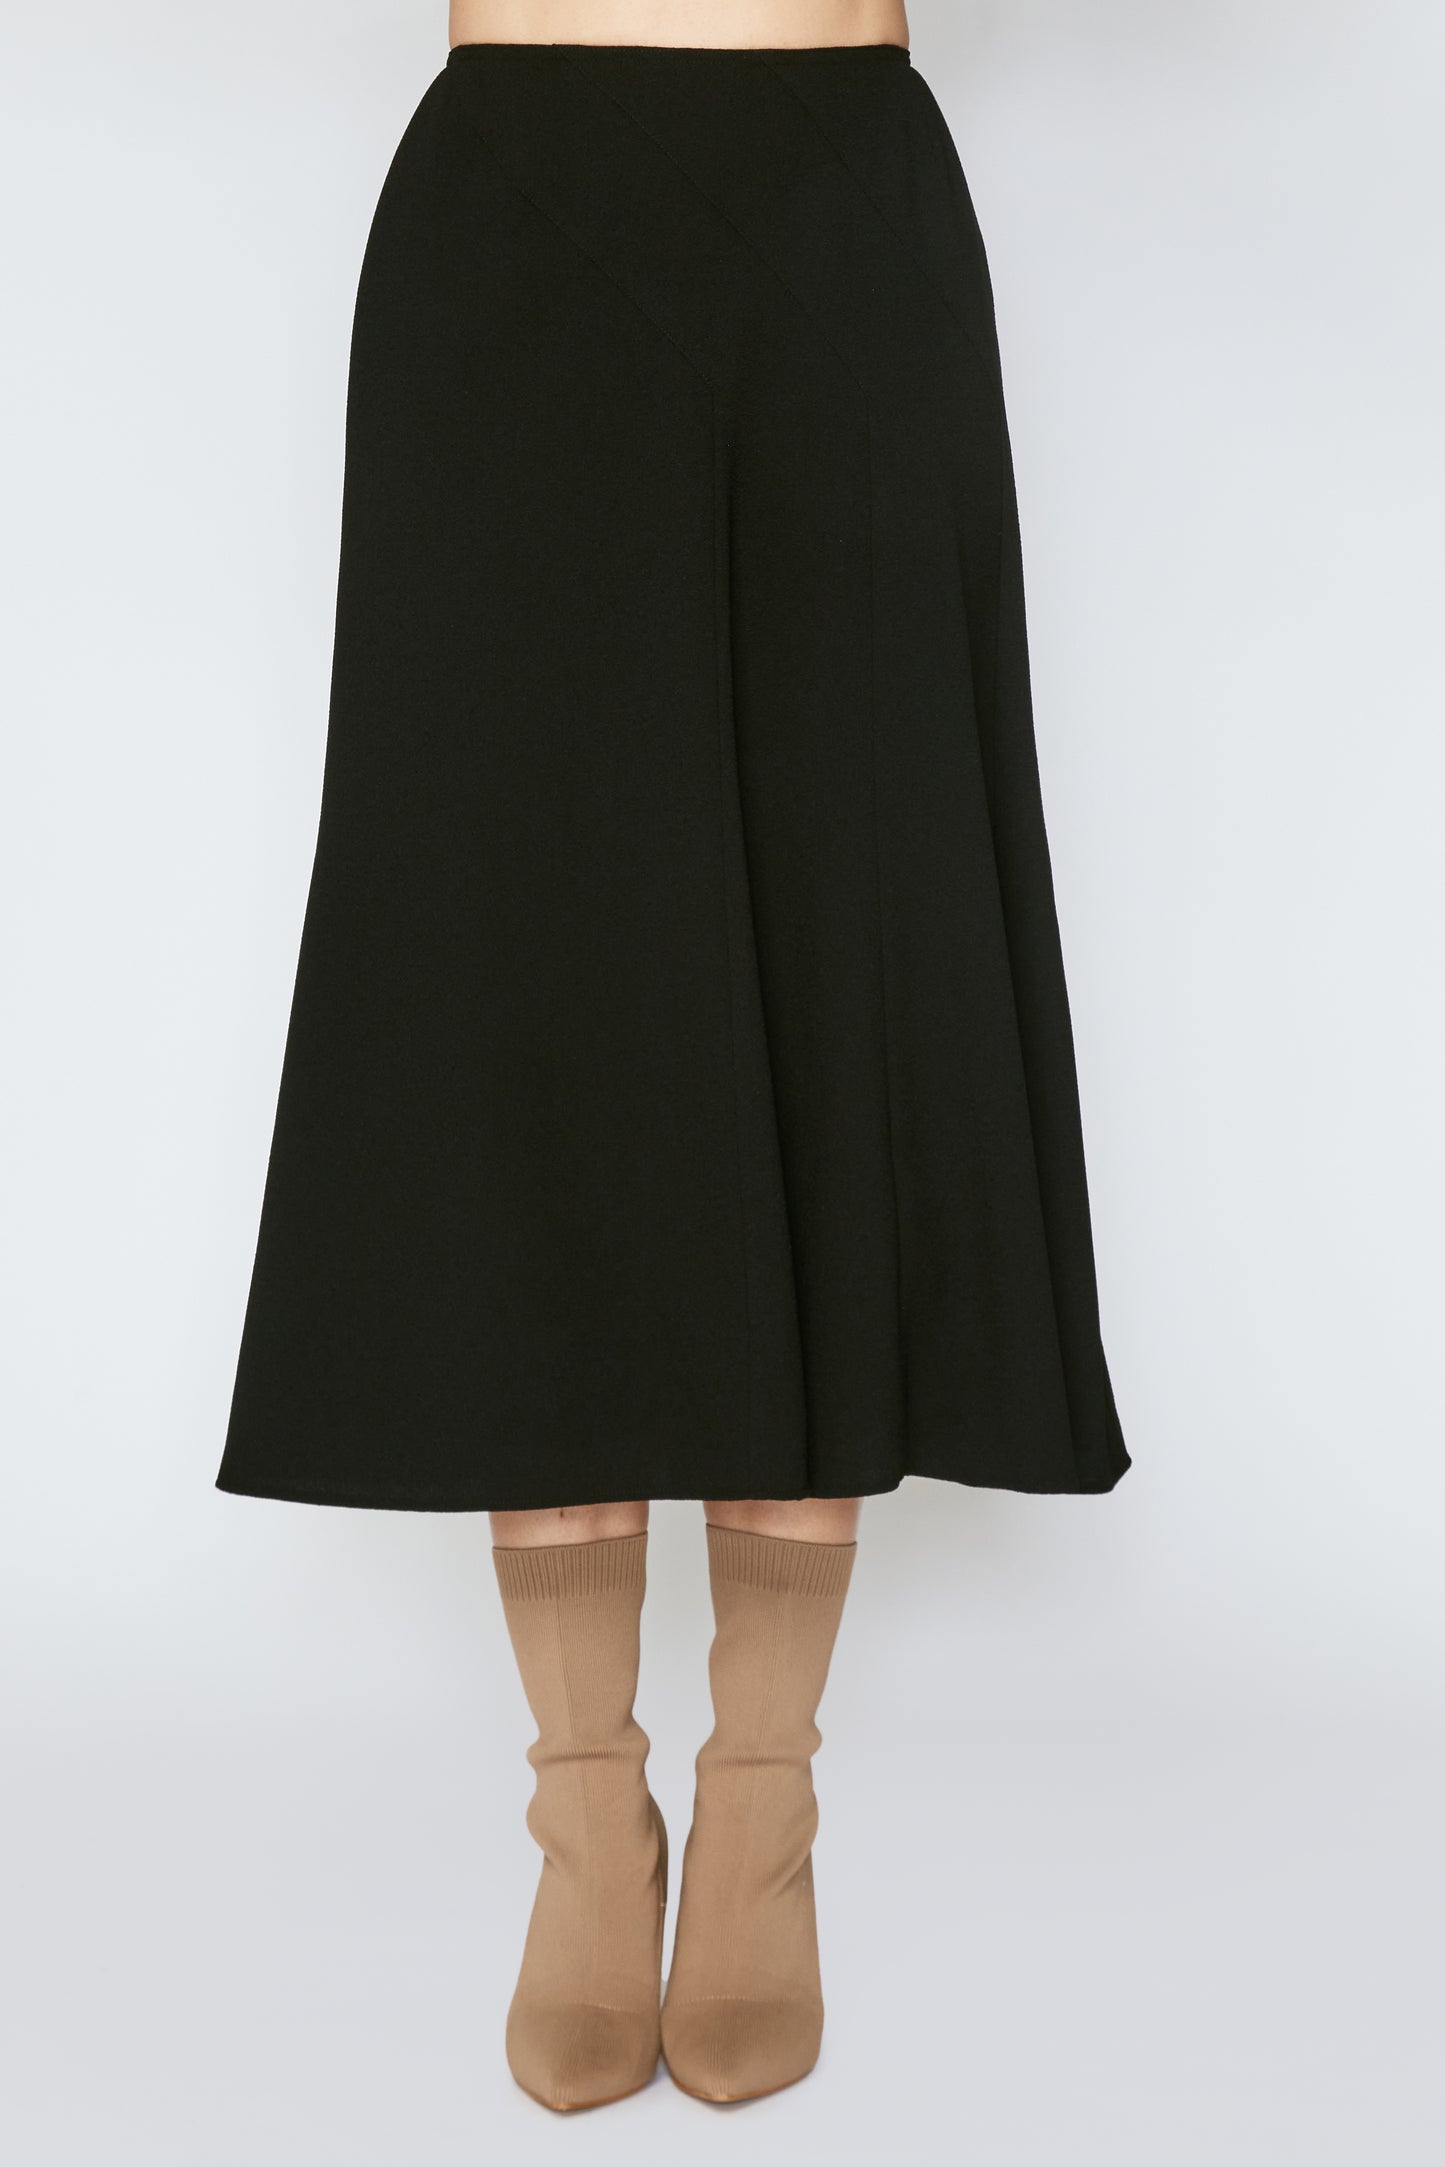 Black London Gored Skirt